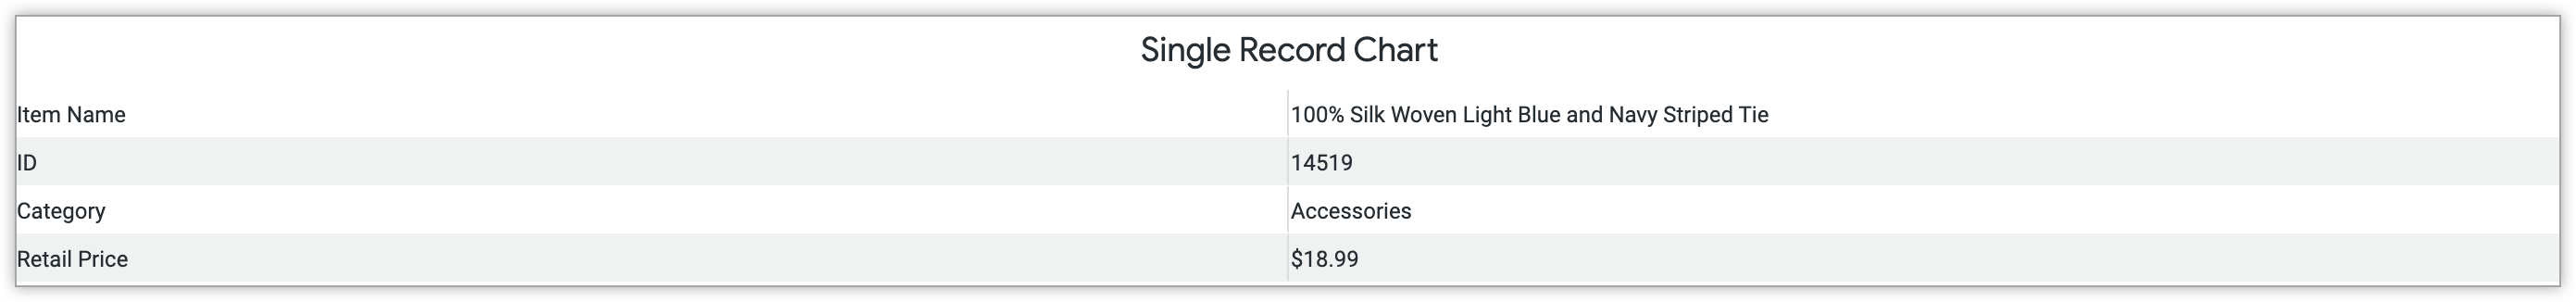 Grafico del record singolo che mostra l'ID prodotto, la categoria e il prezzo al dettaglio dell'articolo.